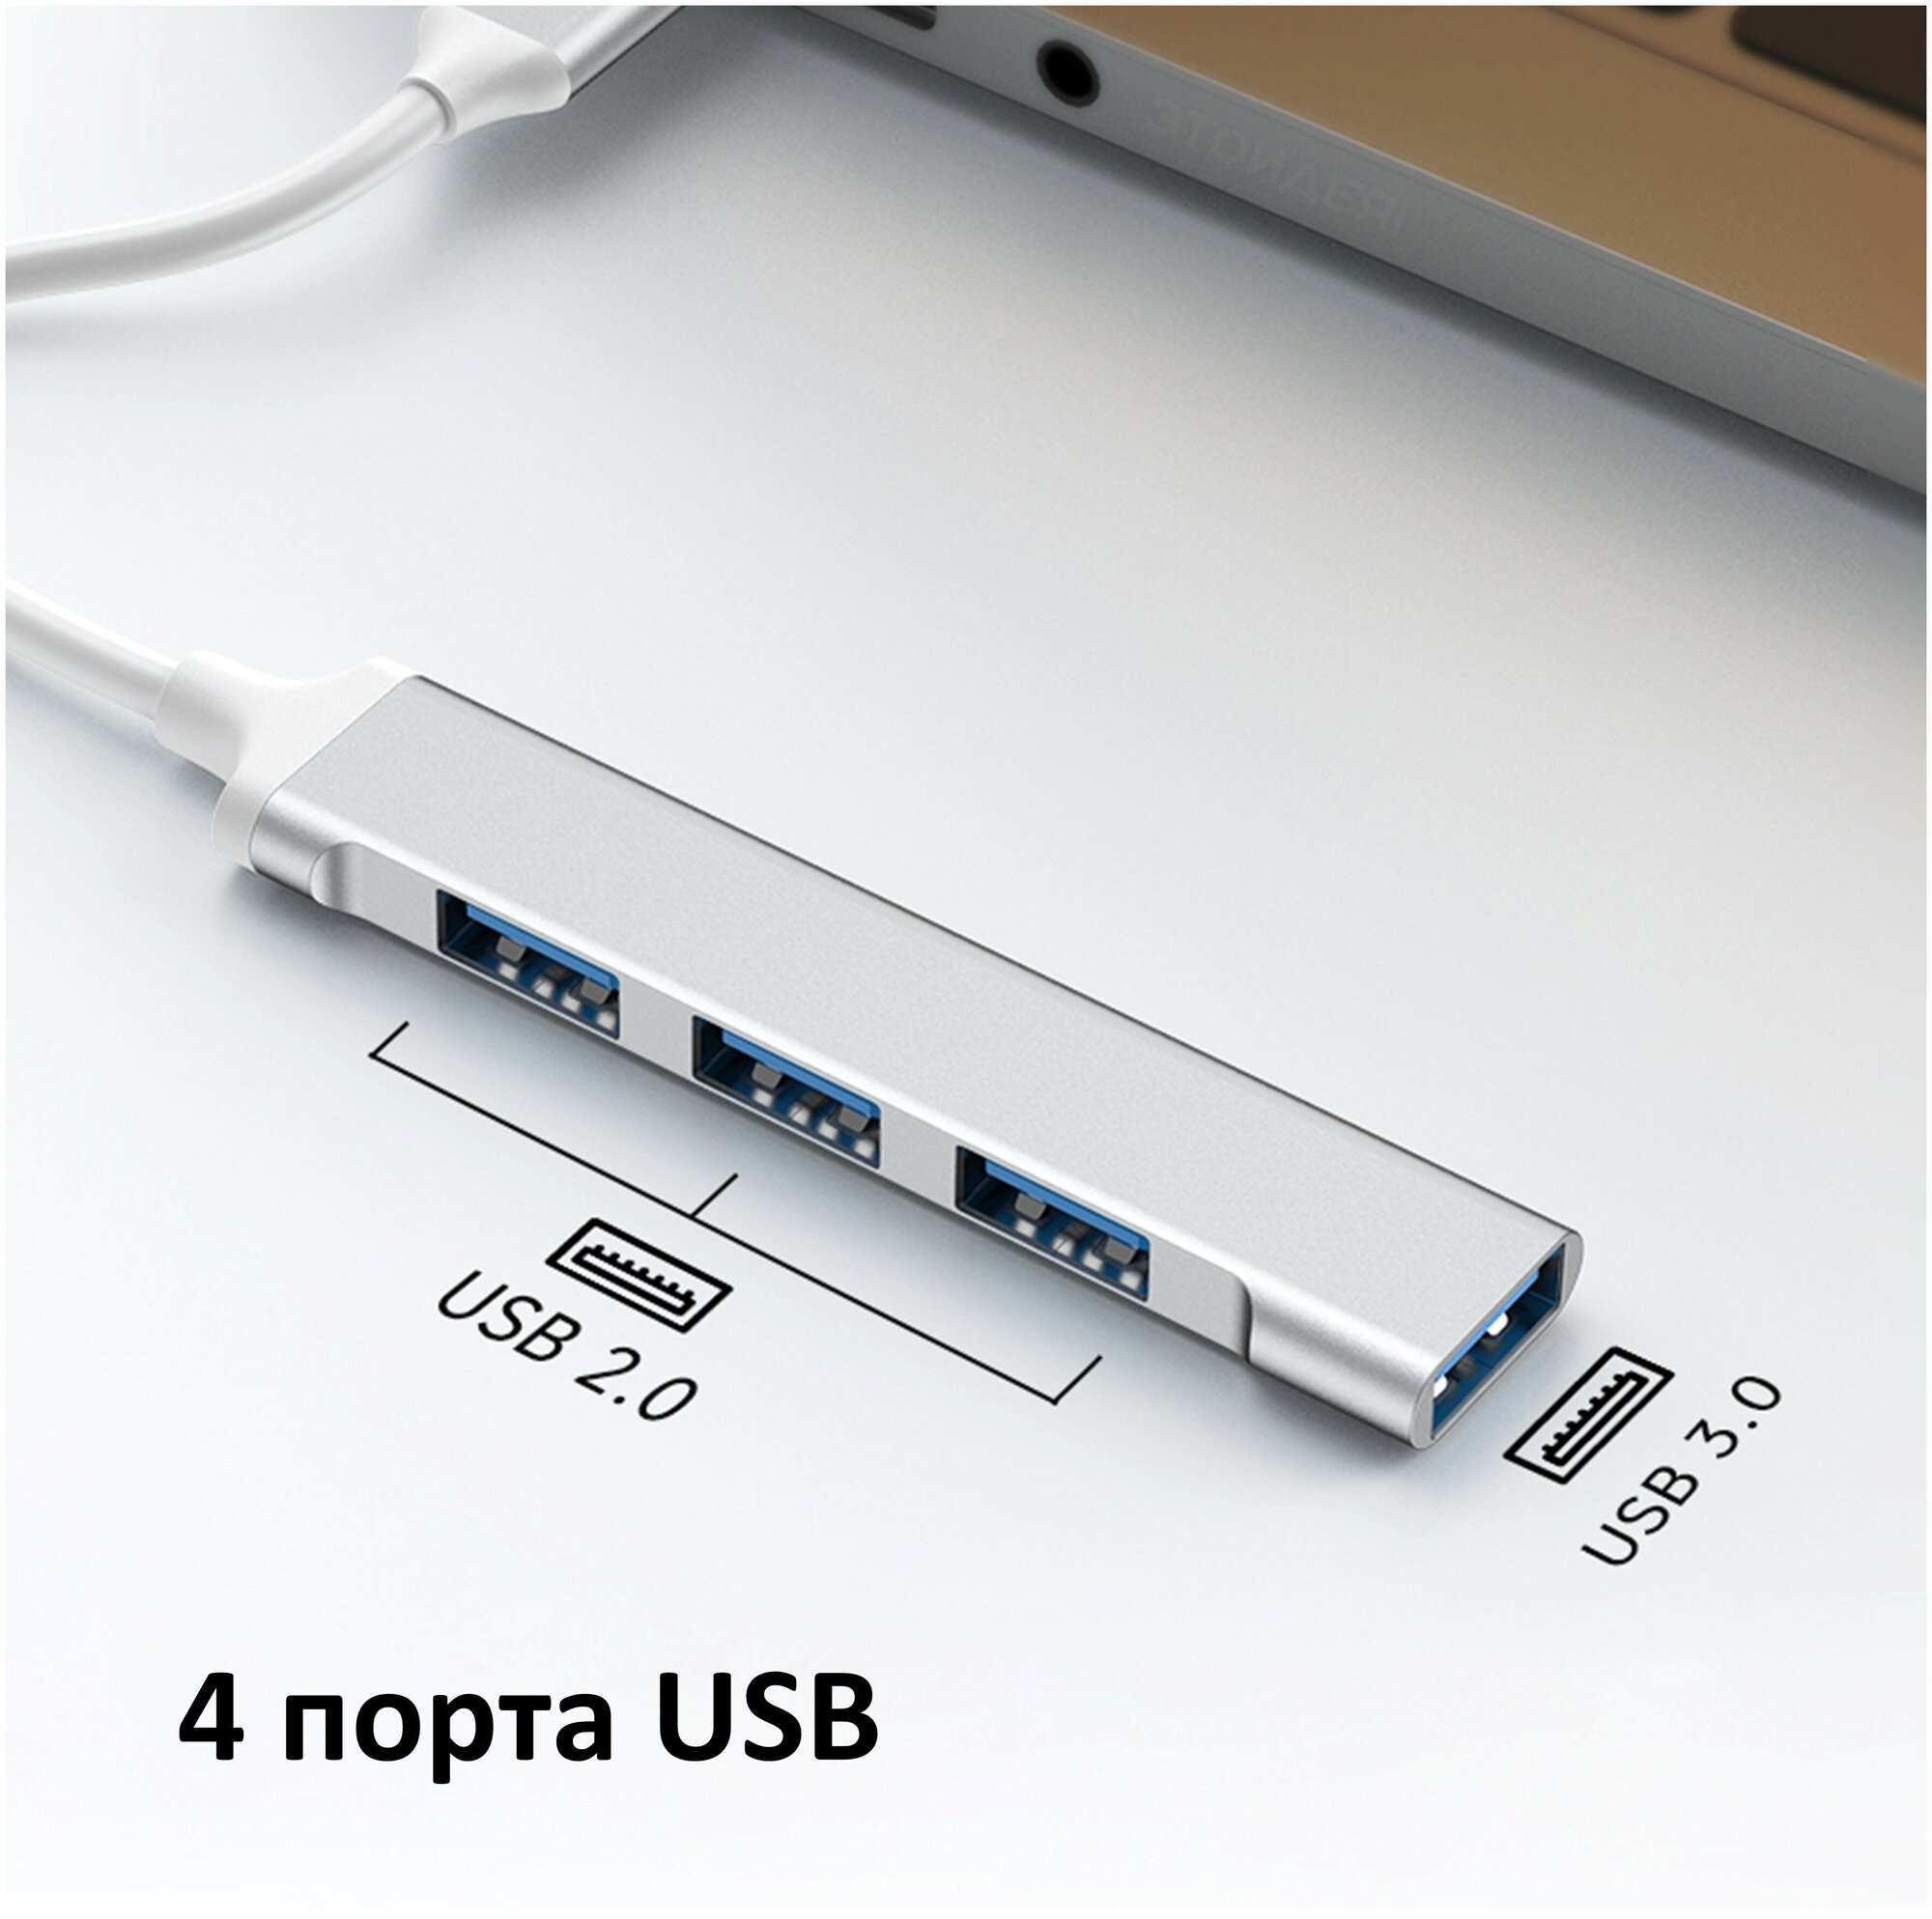 Переходник NOBUS для MacBook, 4 порта, Type-C - USB 3.0 и 2.0, серебристый с белым проводом / Хаб для ноутбука с USB-C на USB-A